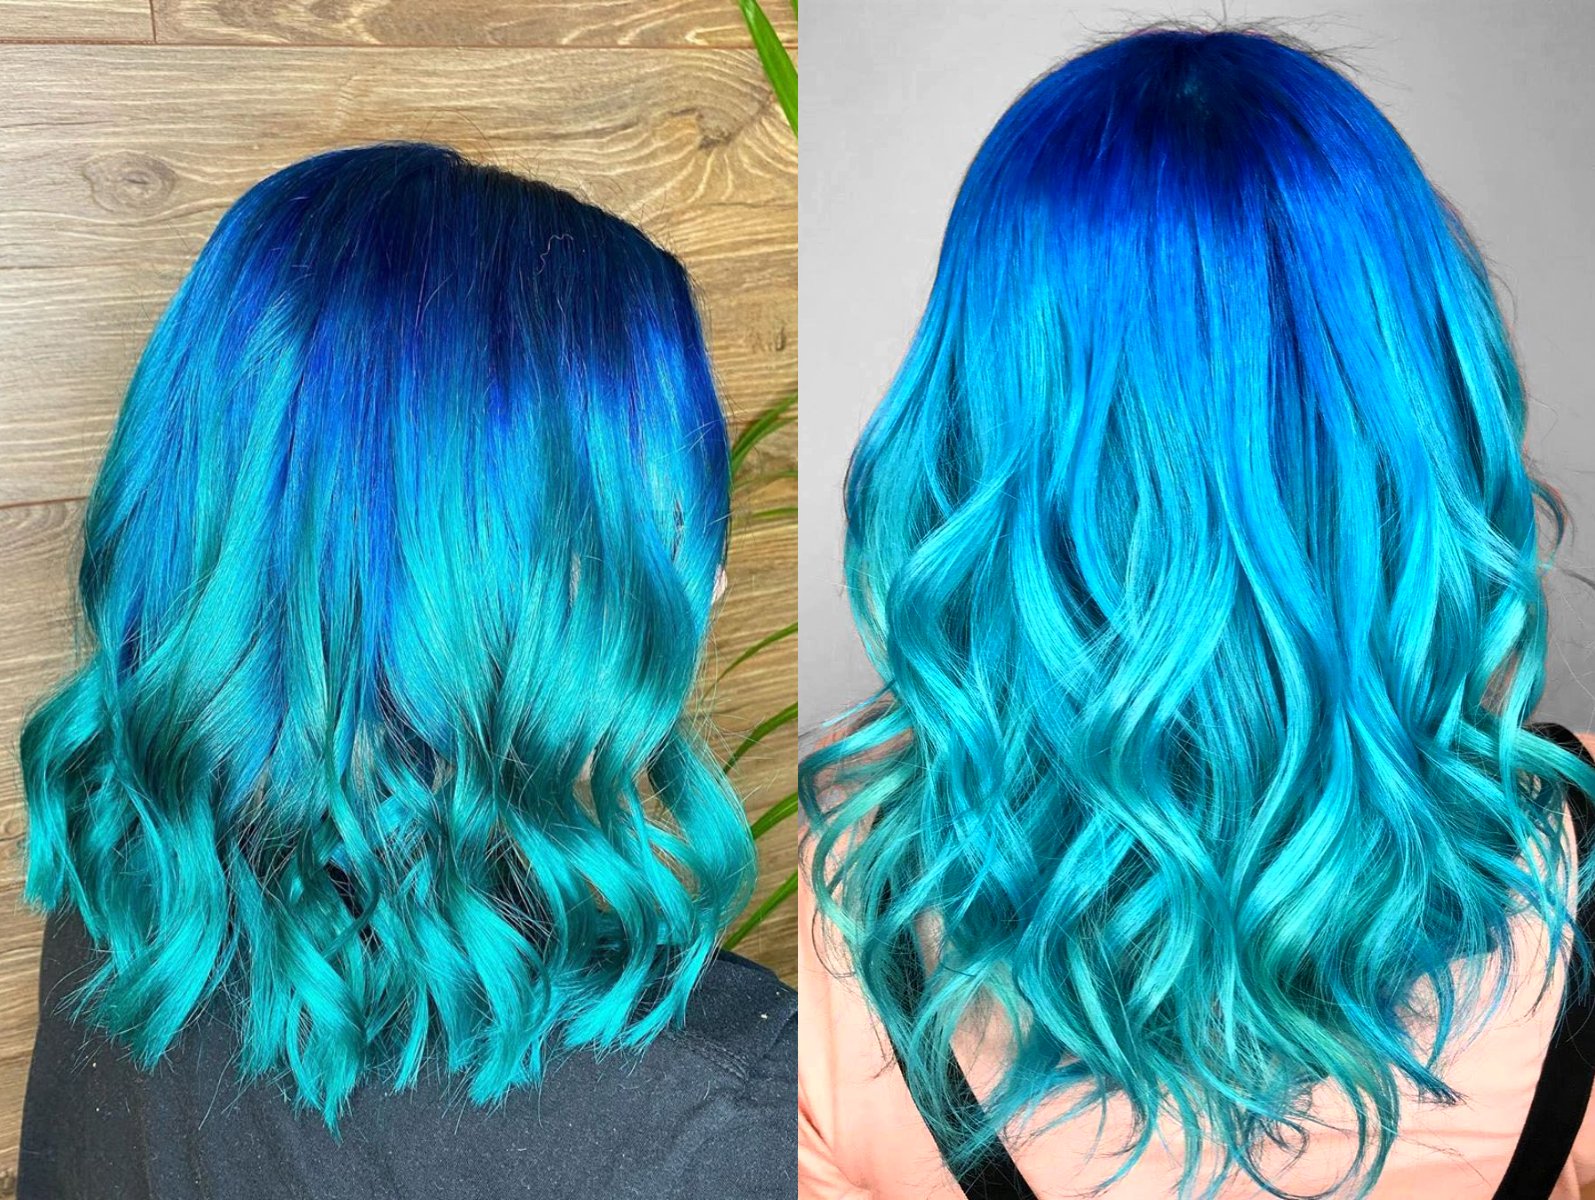 Arábica Cordelia Producto Blue balayage', el tinte de cabello azul que parece el mar